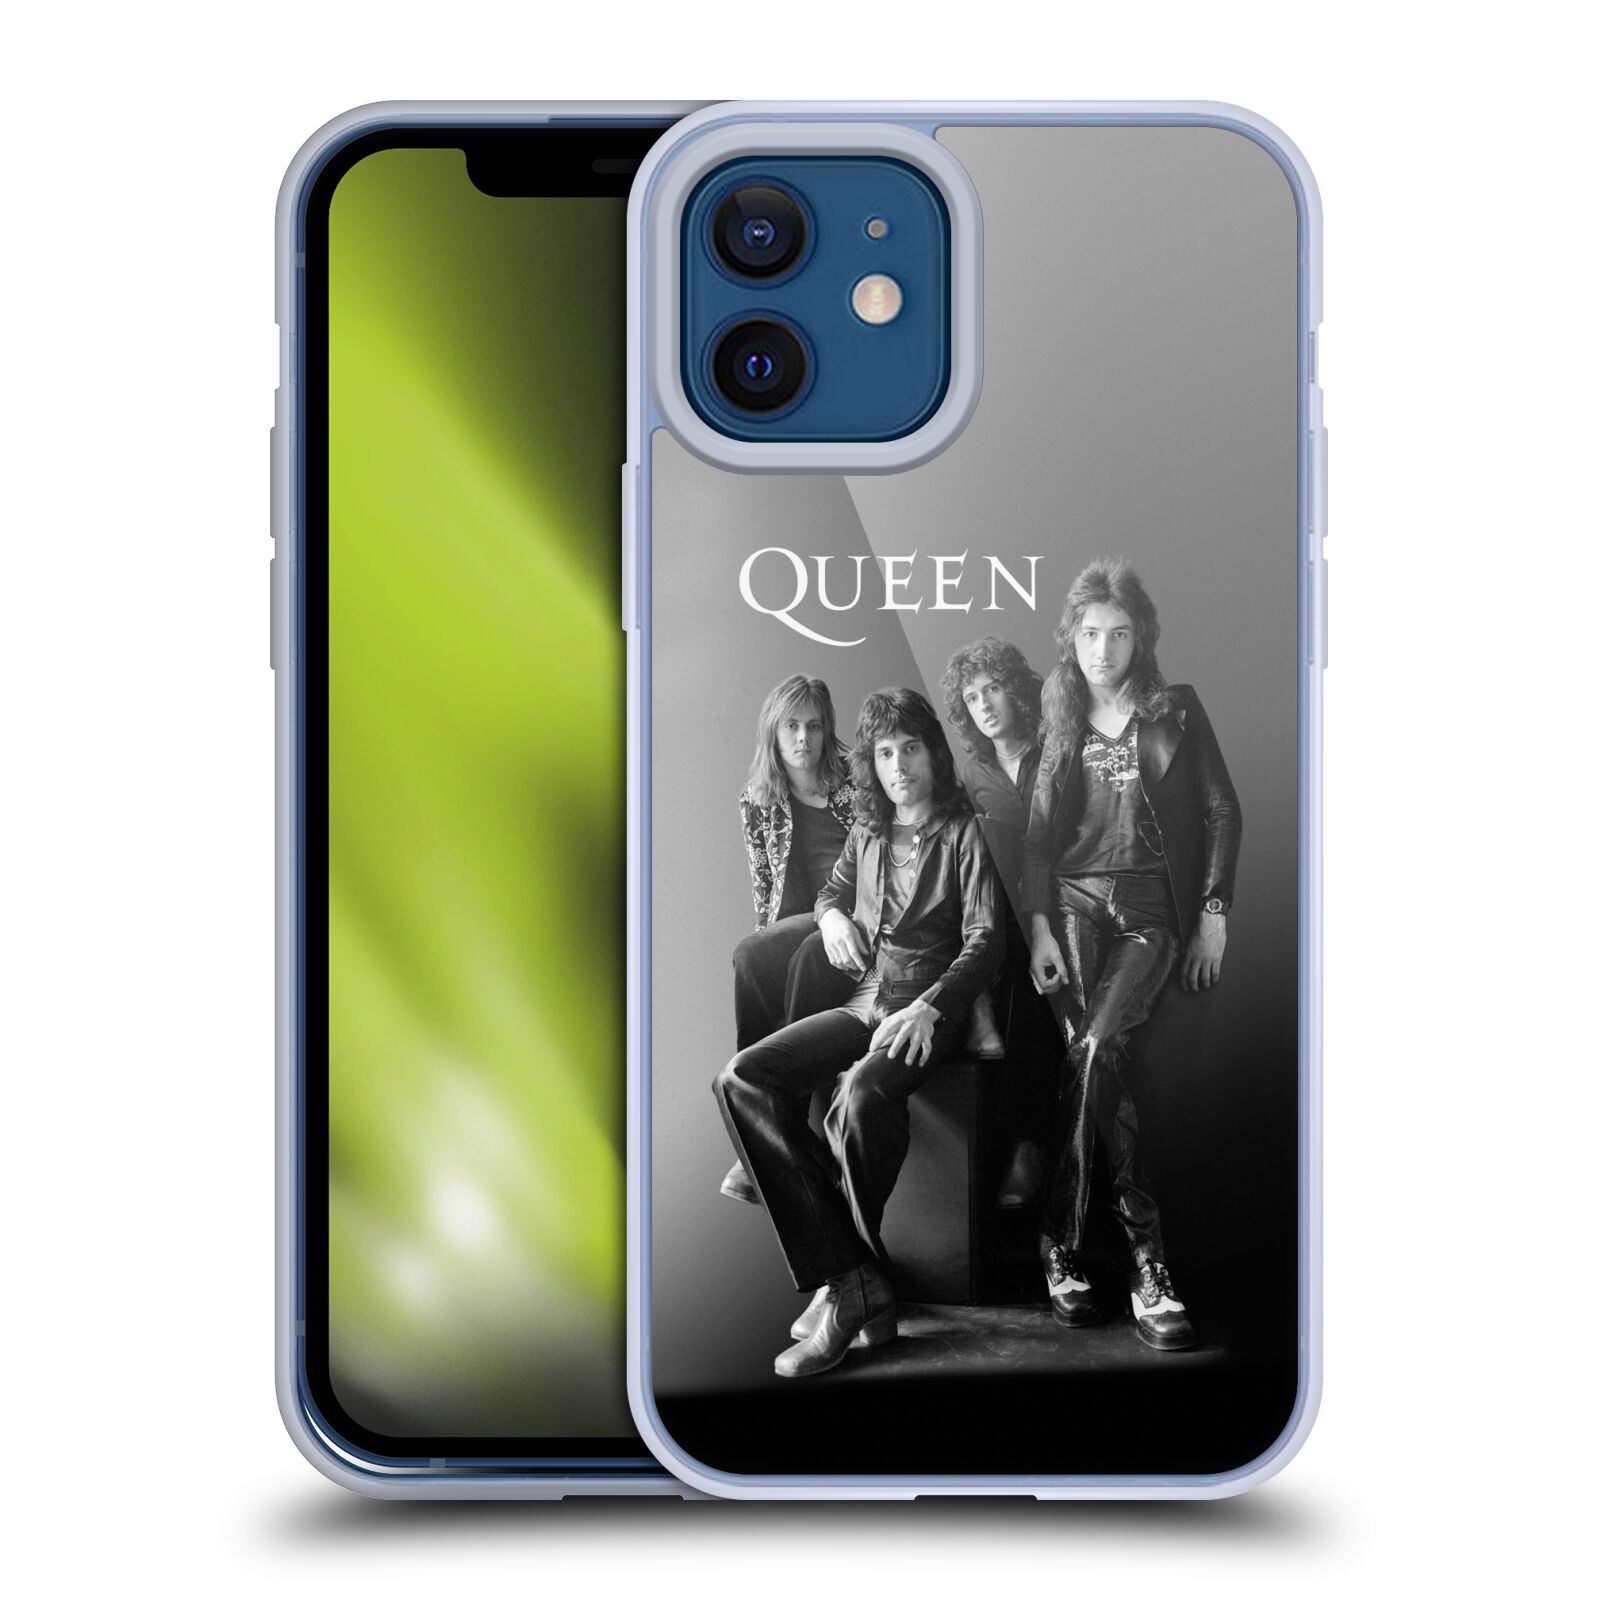 Silikonové pouzdro na mobil Apple iPhone 12 / 12 Pro - Head Case - Queen - Skupina (Silikonový kryt, obal, pouzdro na mobilní telefon Apple iPhone 12 / Apple iPhone 12 Pro (6,1") s motivem Queen - Skupina)